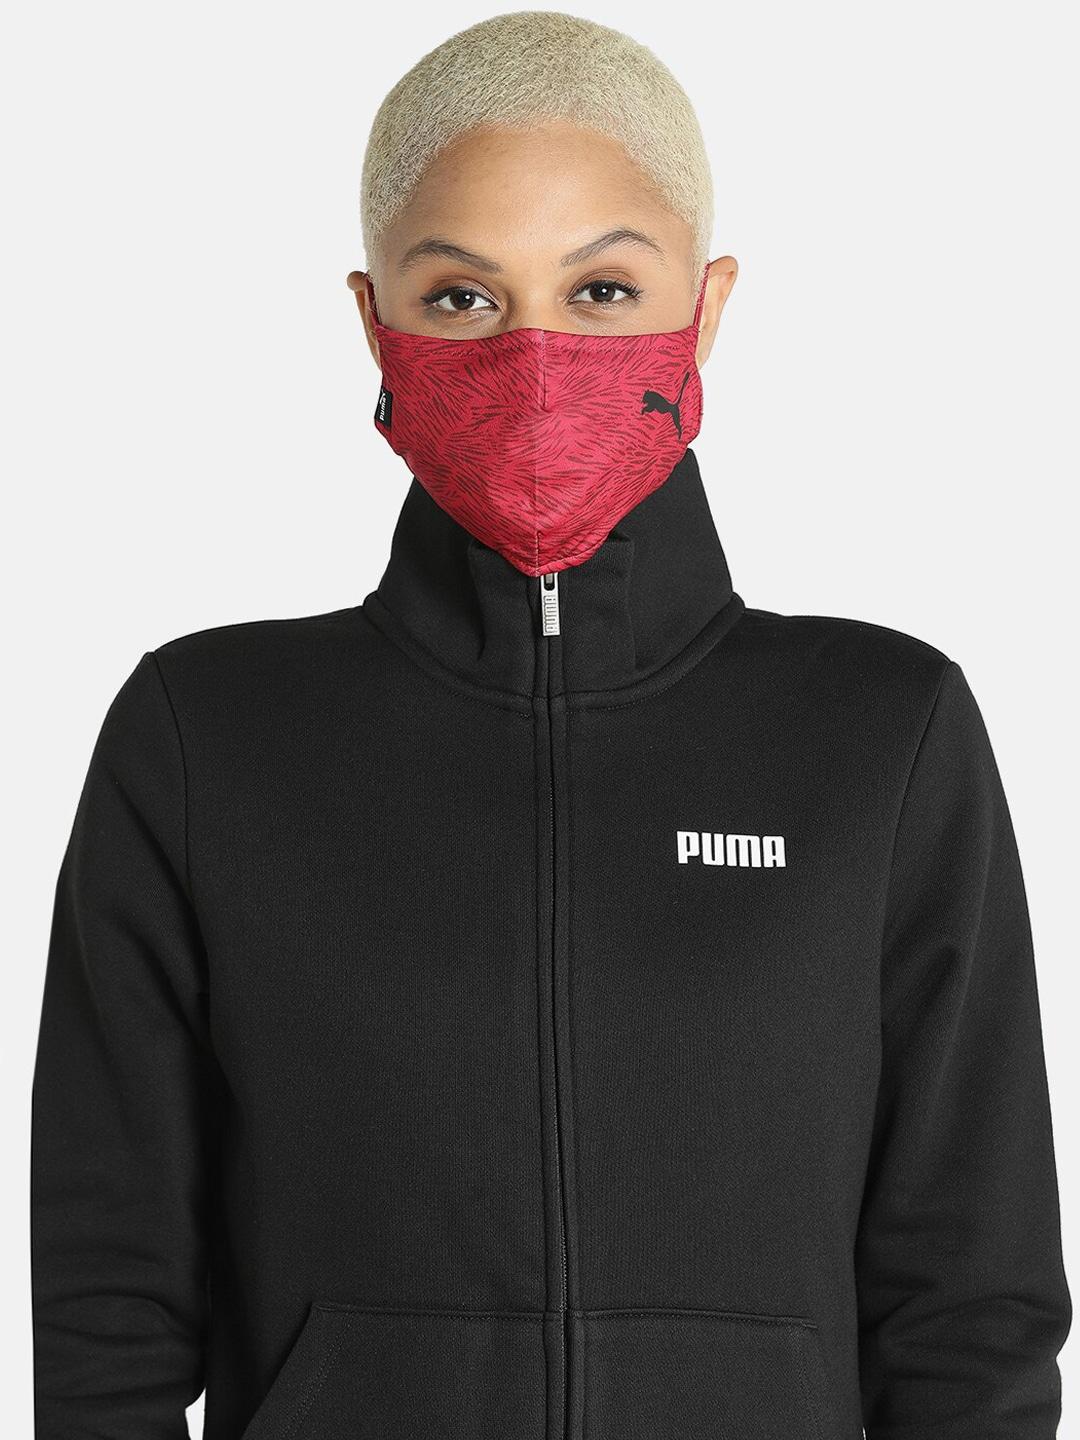 puma-unisex-red-training-face-mask